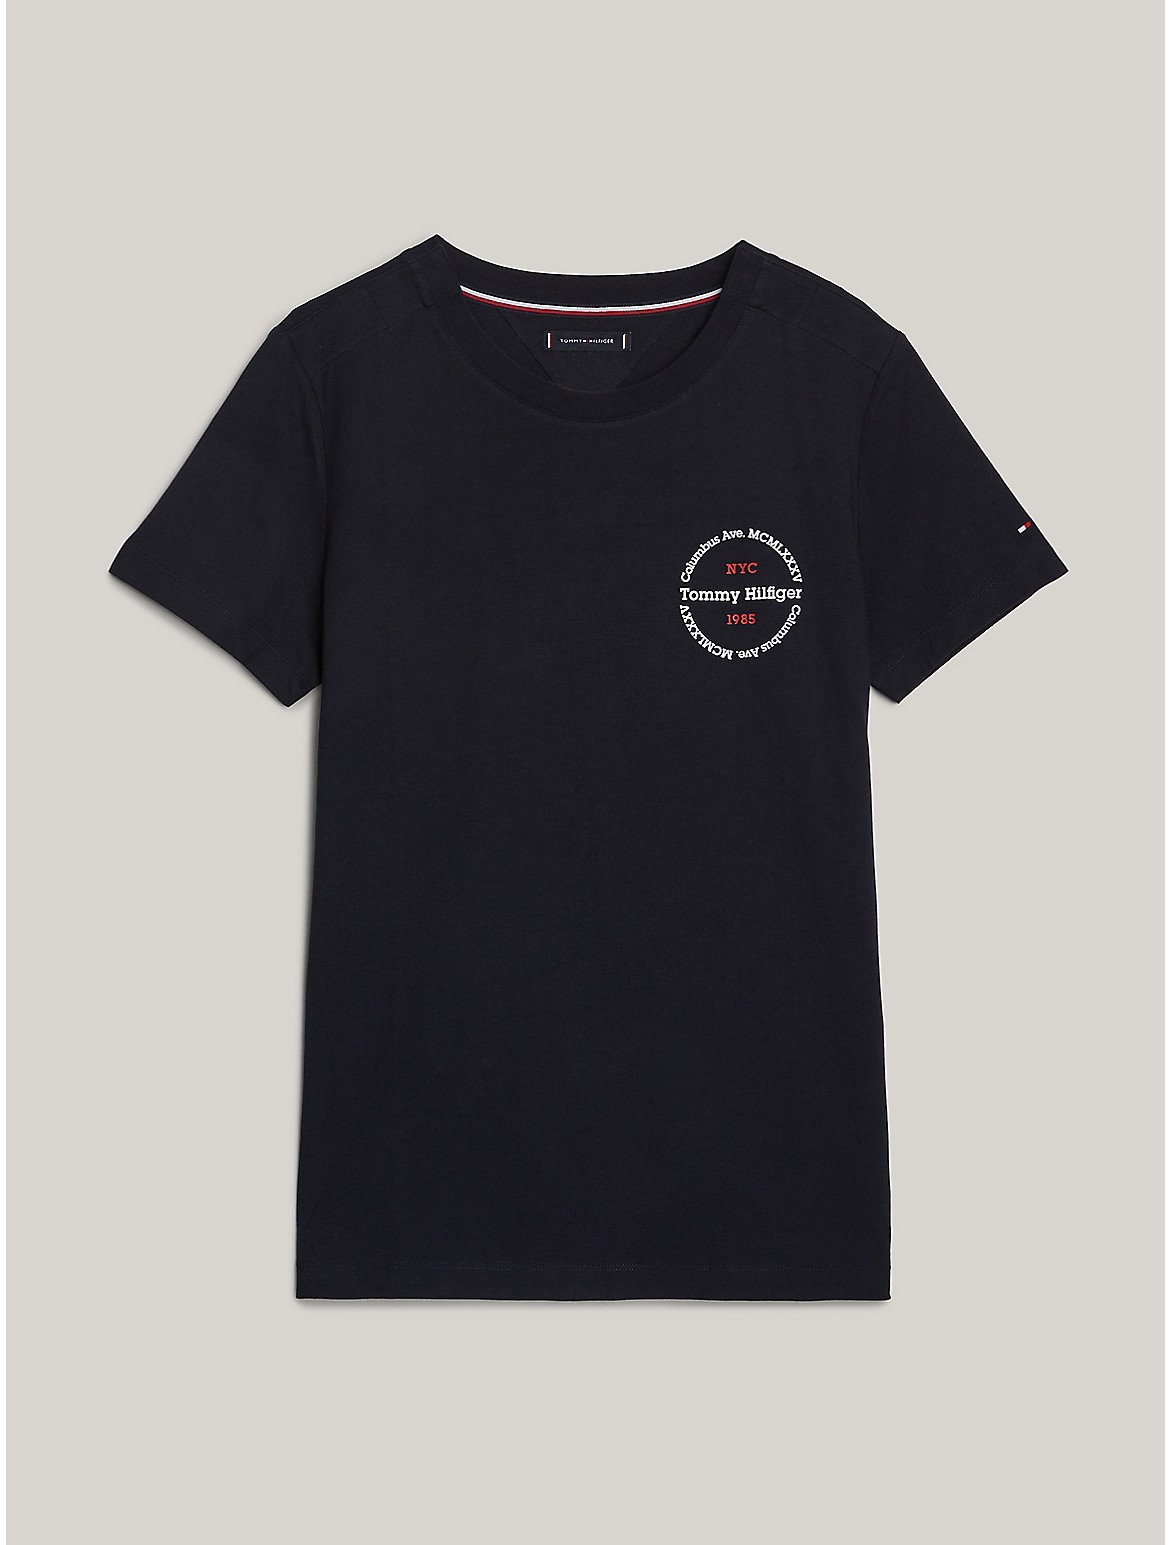 Tommy Hilfiger Men's Slim Fit Round Logo T-Shirt